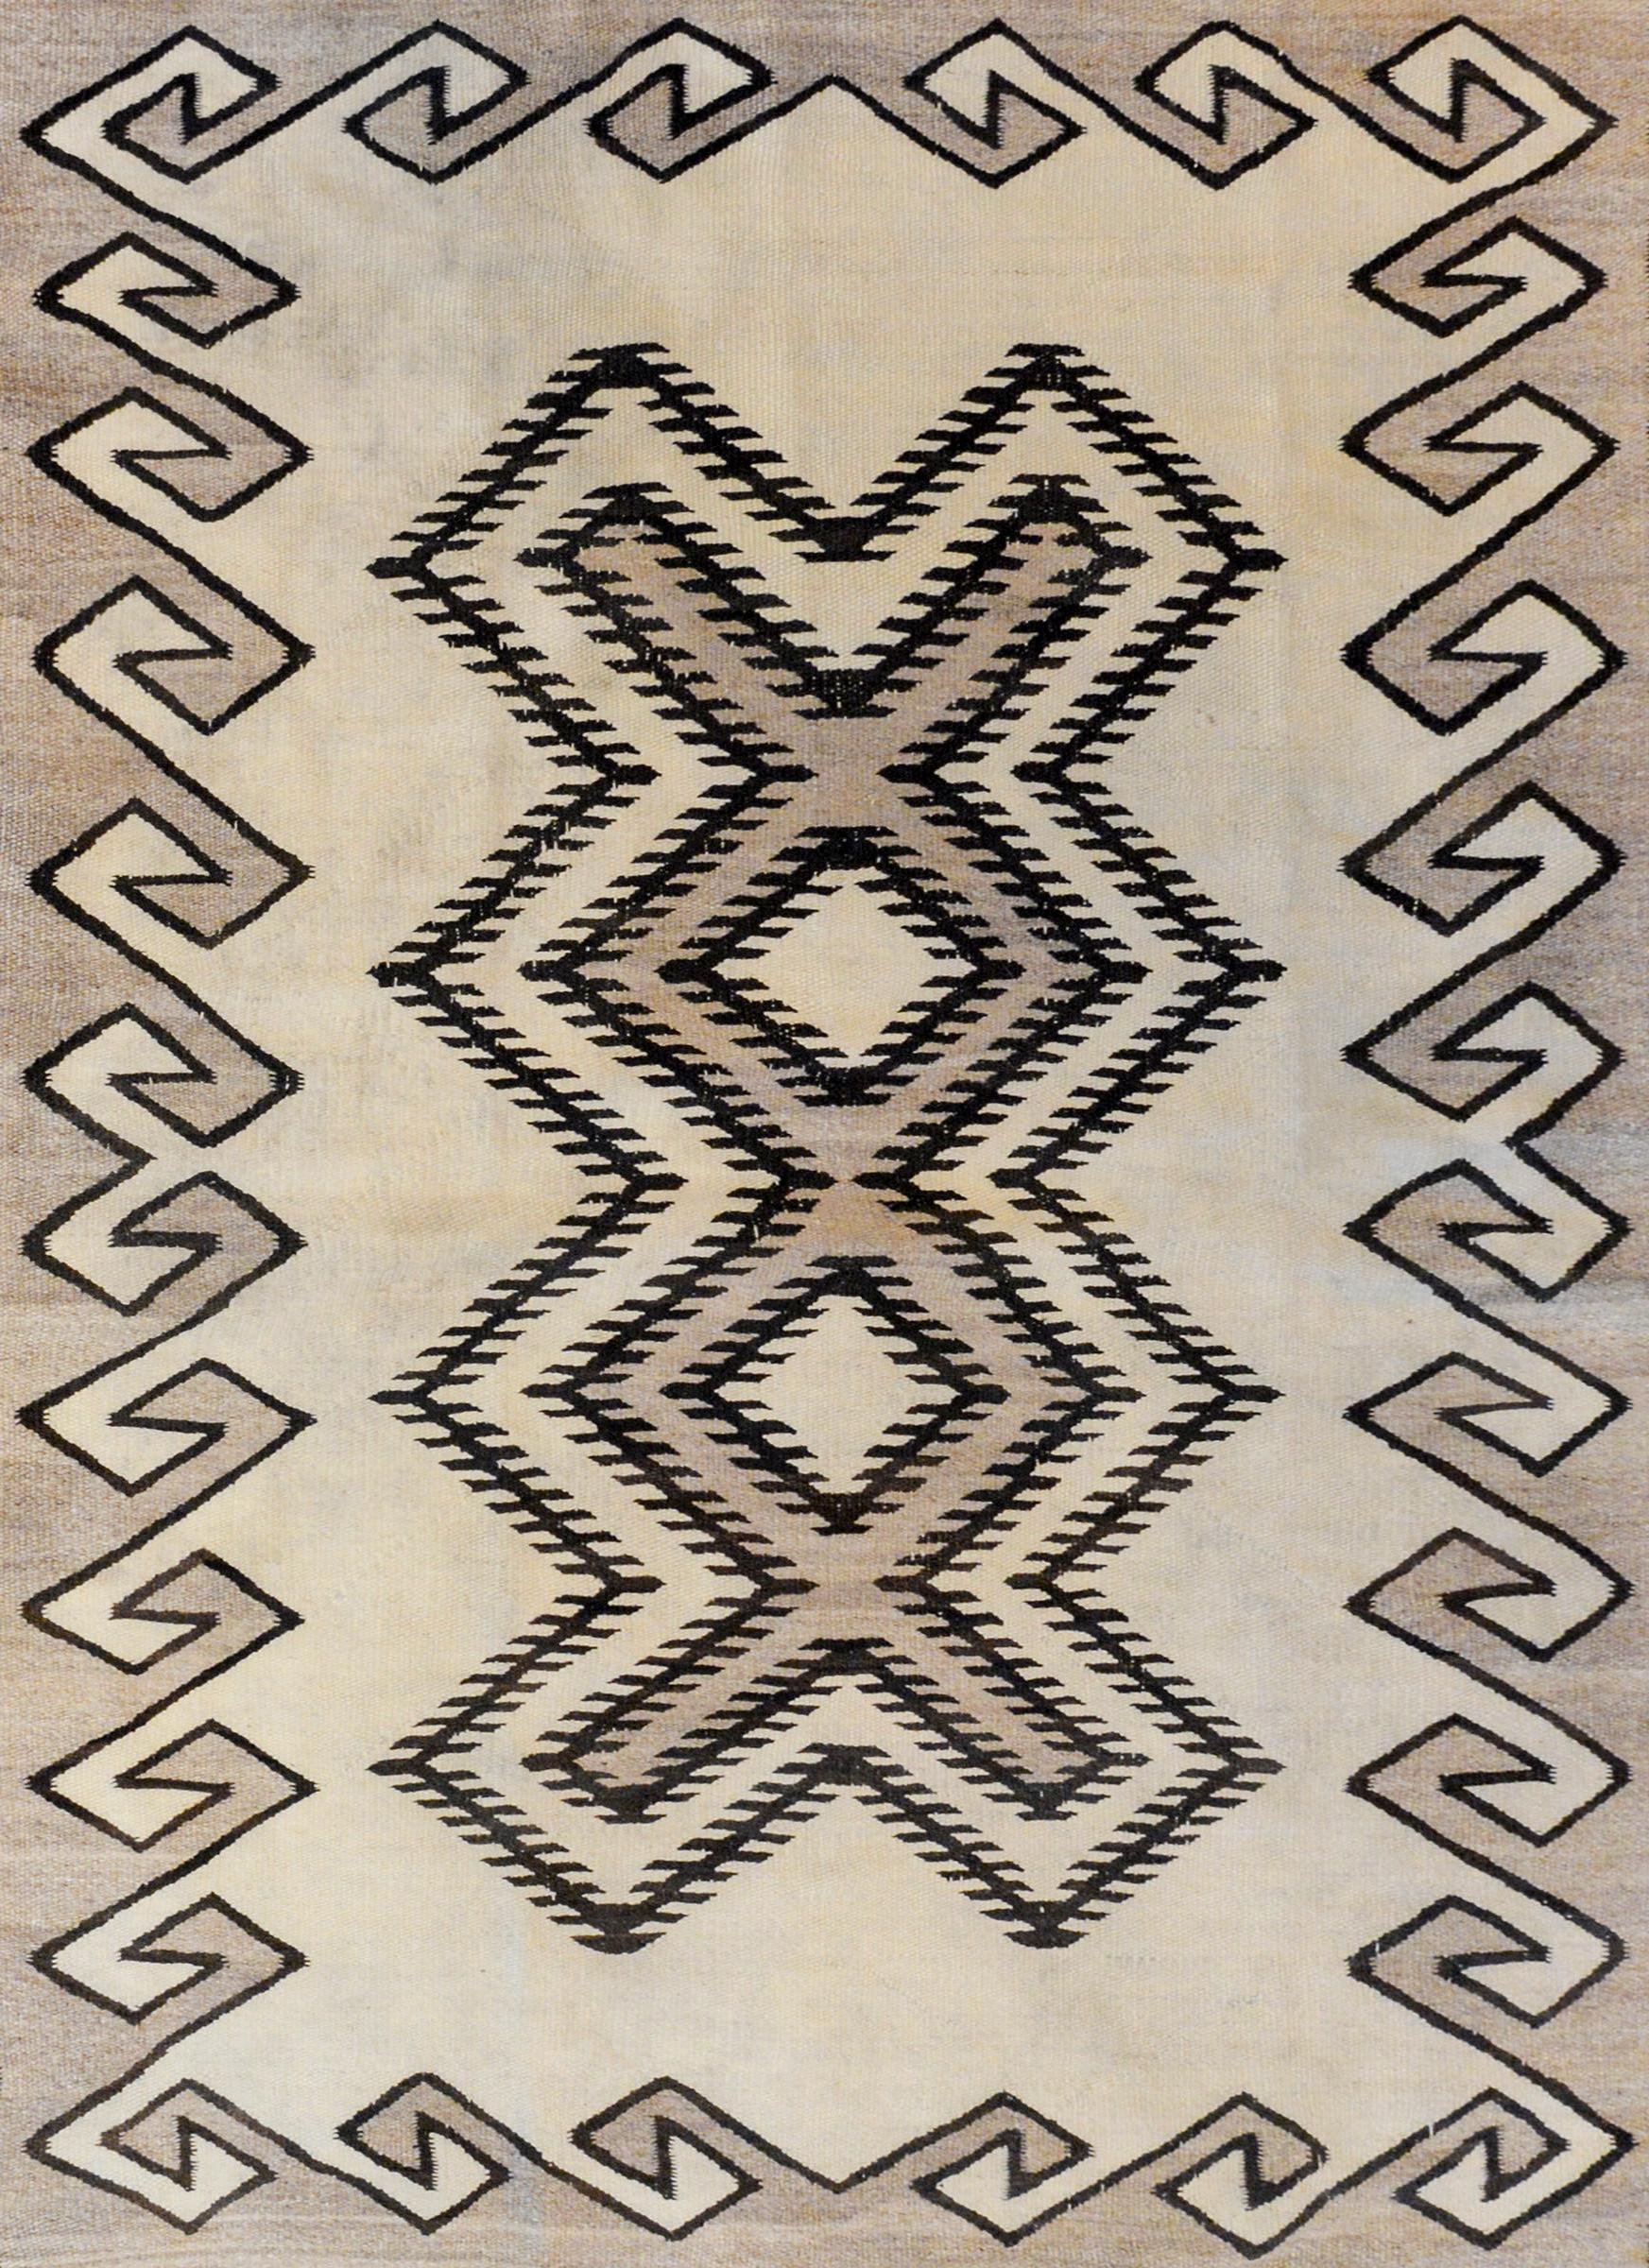 Un magnifique tissage Navajo du début du 20e siècle avec un motif géométrique audacieux à grande échelle sur le champ entouré d'une bordure complexe de vagues et d'un motif sinueux, le tout tissé en laine naturelle non teintée.